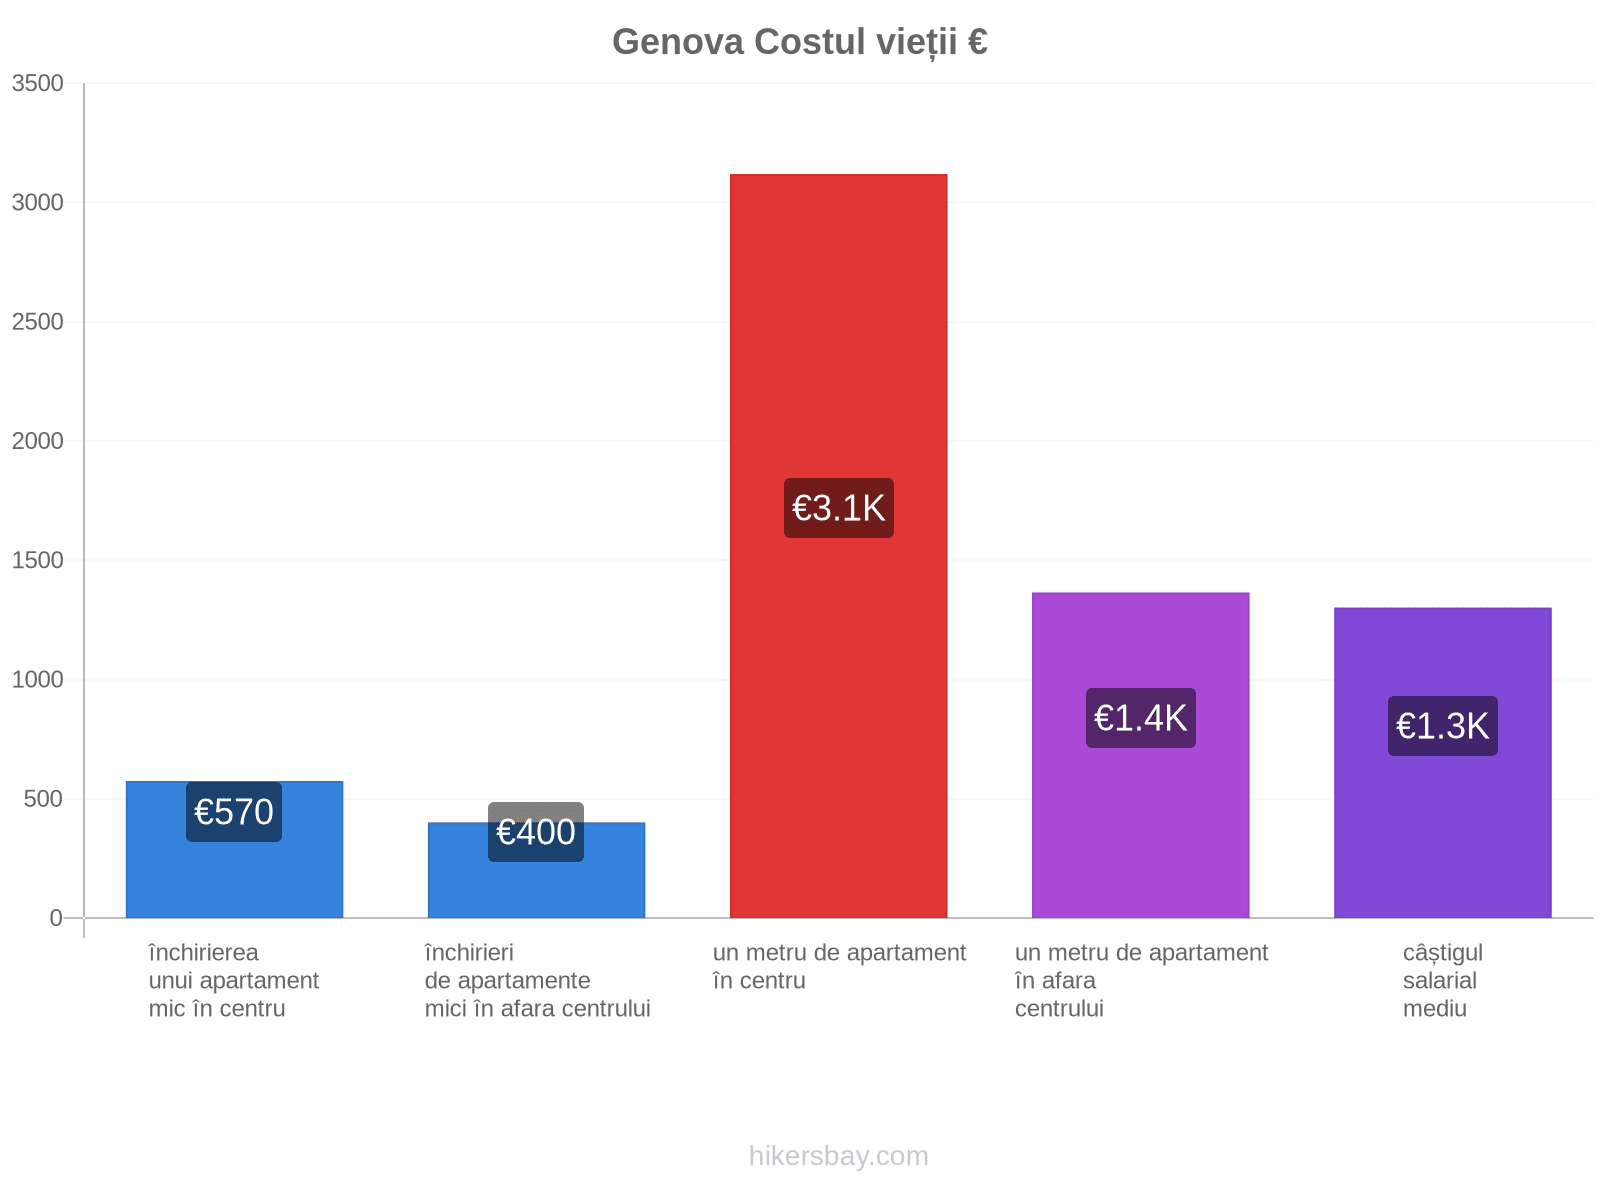 Genova costul vieții hikersbay.com